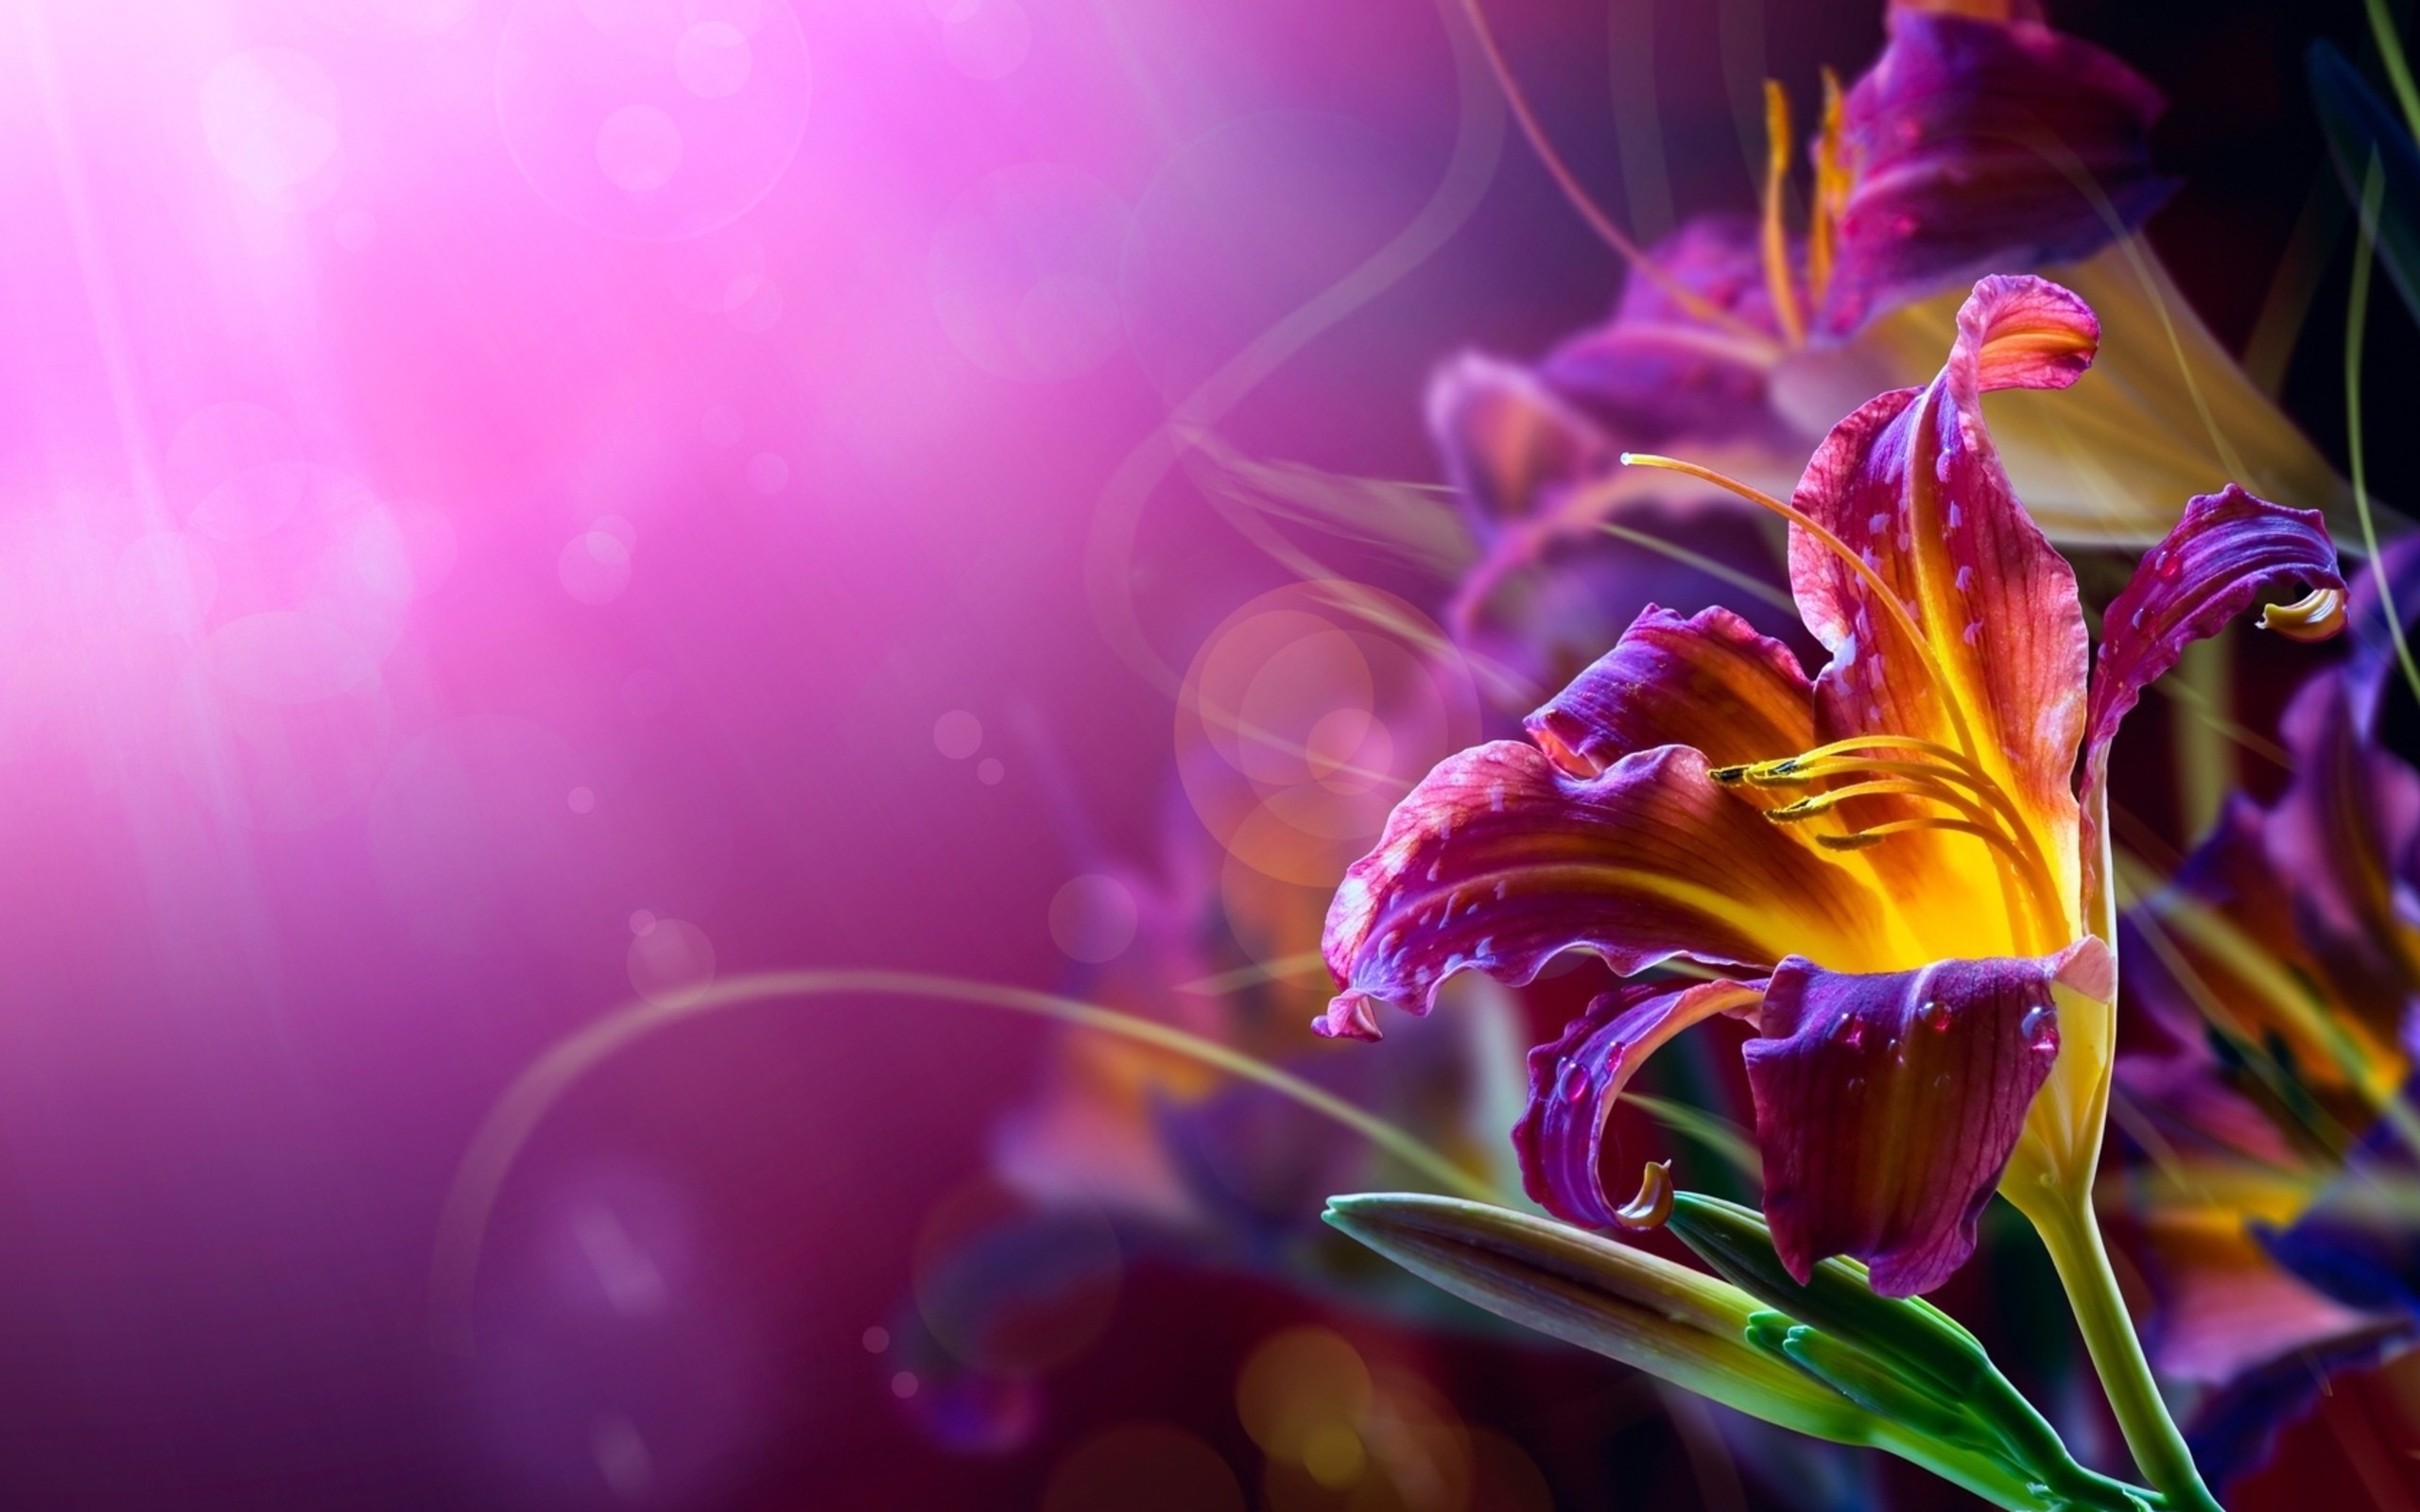 Cool abstract flower wallpaper HD | PixelsTalk.Net